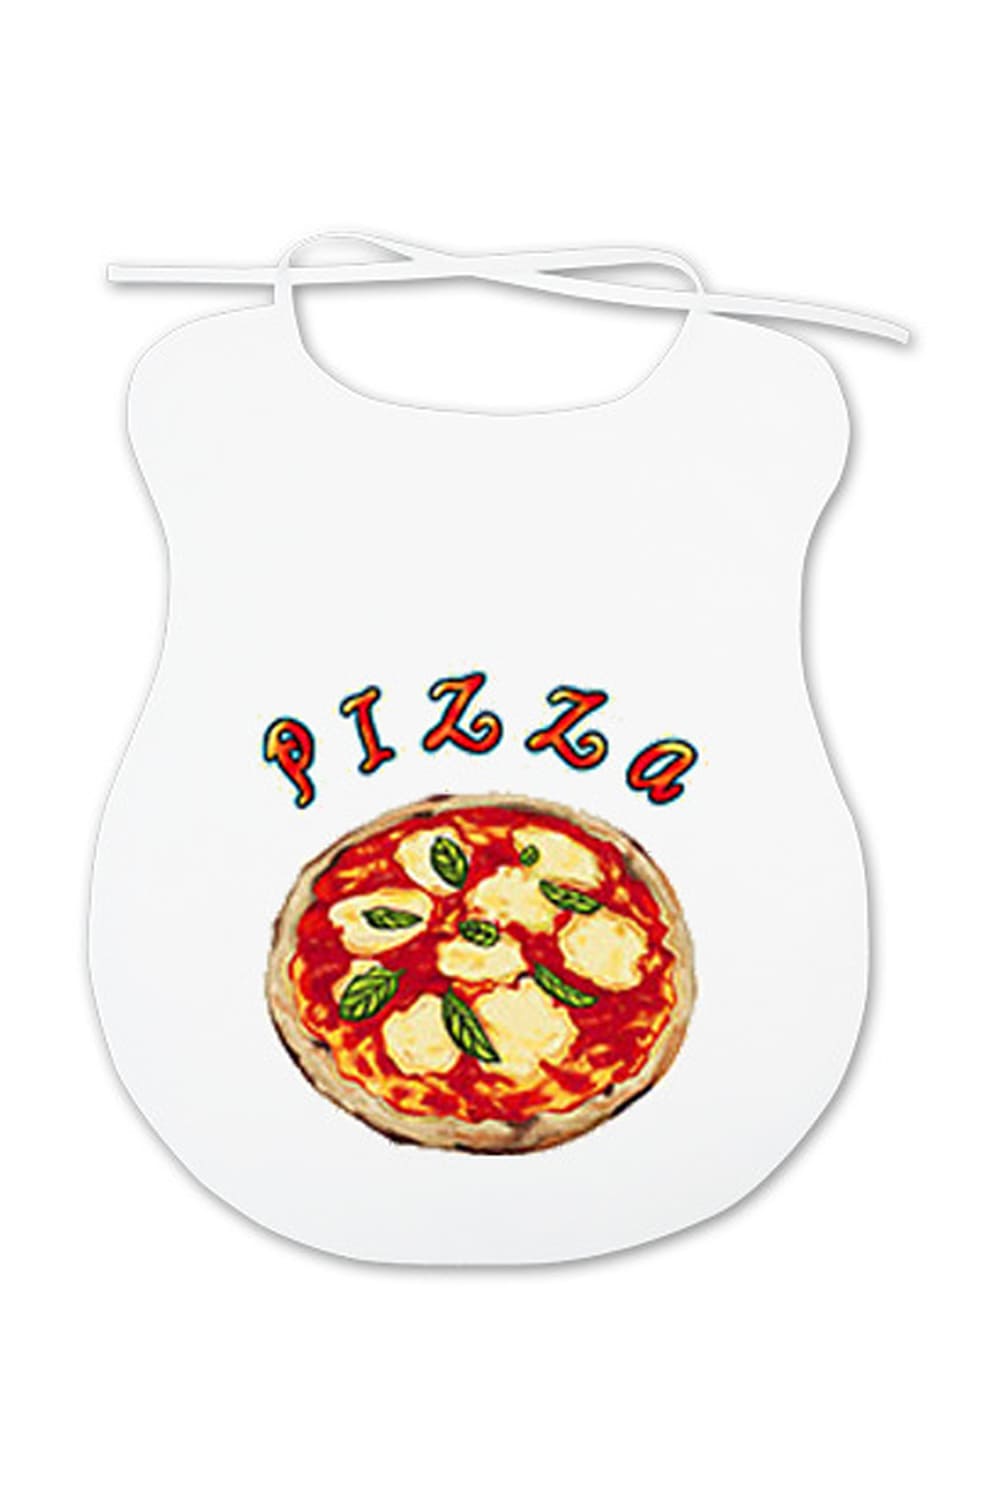 Ein lustiges Geschenk fuer alle Erwachsene, die mehr oder weniger beim Essen kleckern. Auf dem Spaghettilatz ist eine Pizza abgebildet.  Der Pizza Erwachsenenlatz ist aus Baumwolle.